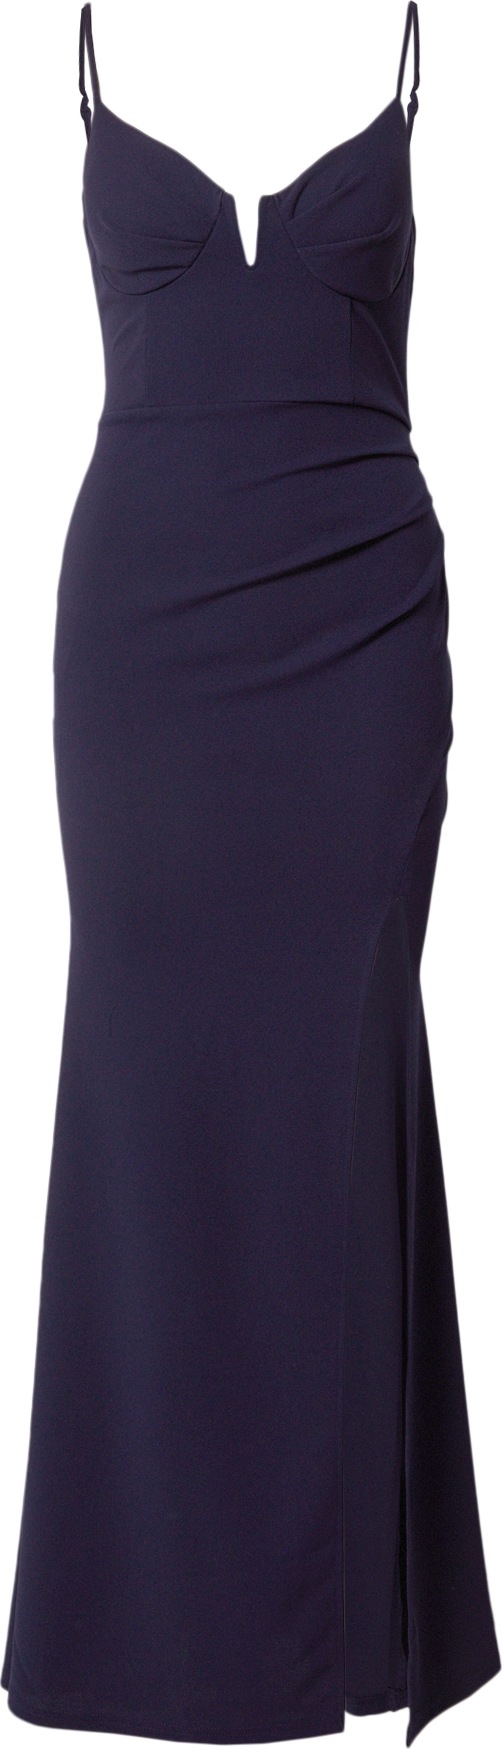 Skirt & Stiletto Společenské šaty 'ALANA' marine modrá